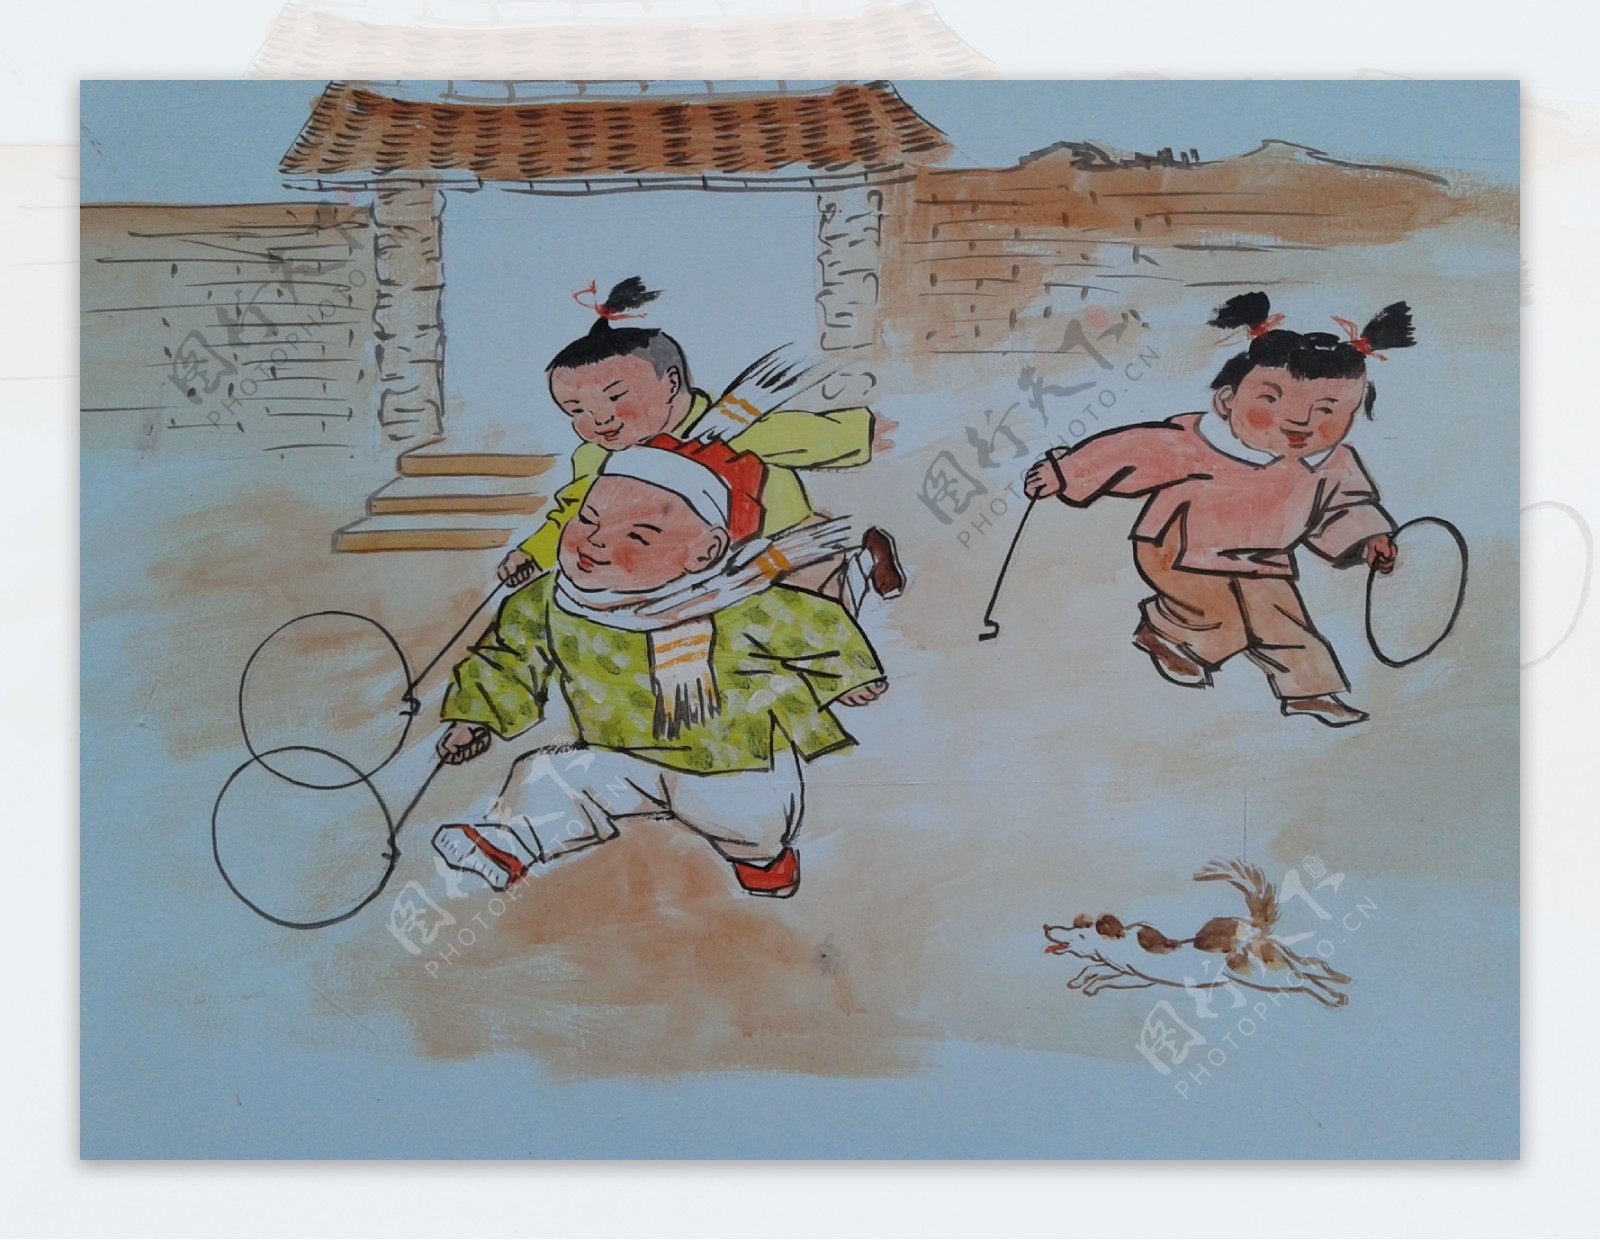 中国传统游戏校园文化铁环绘